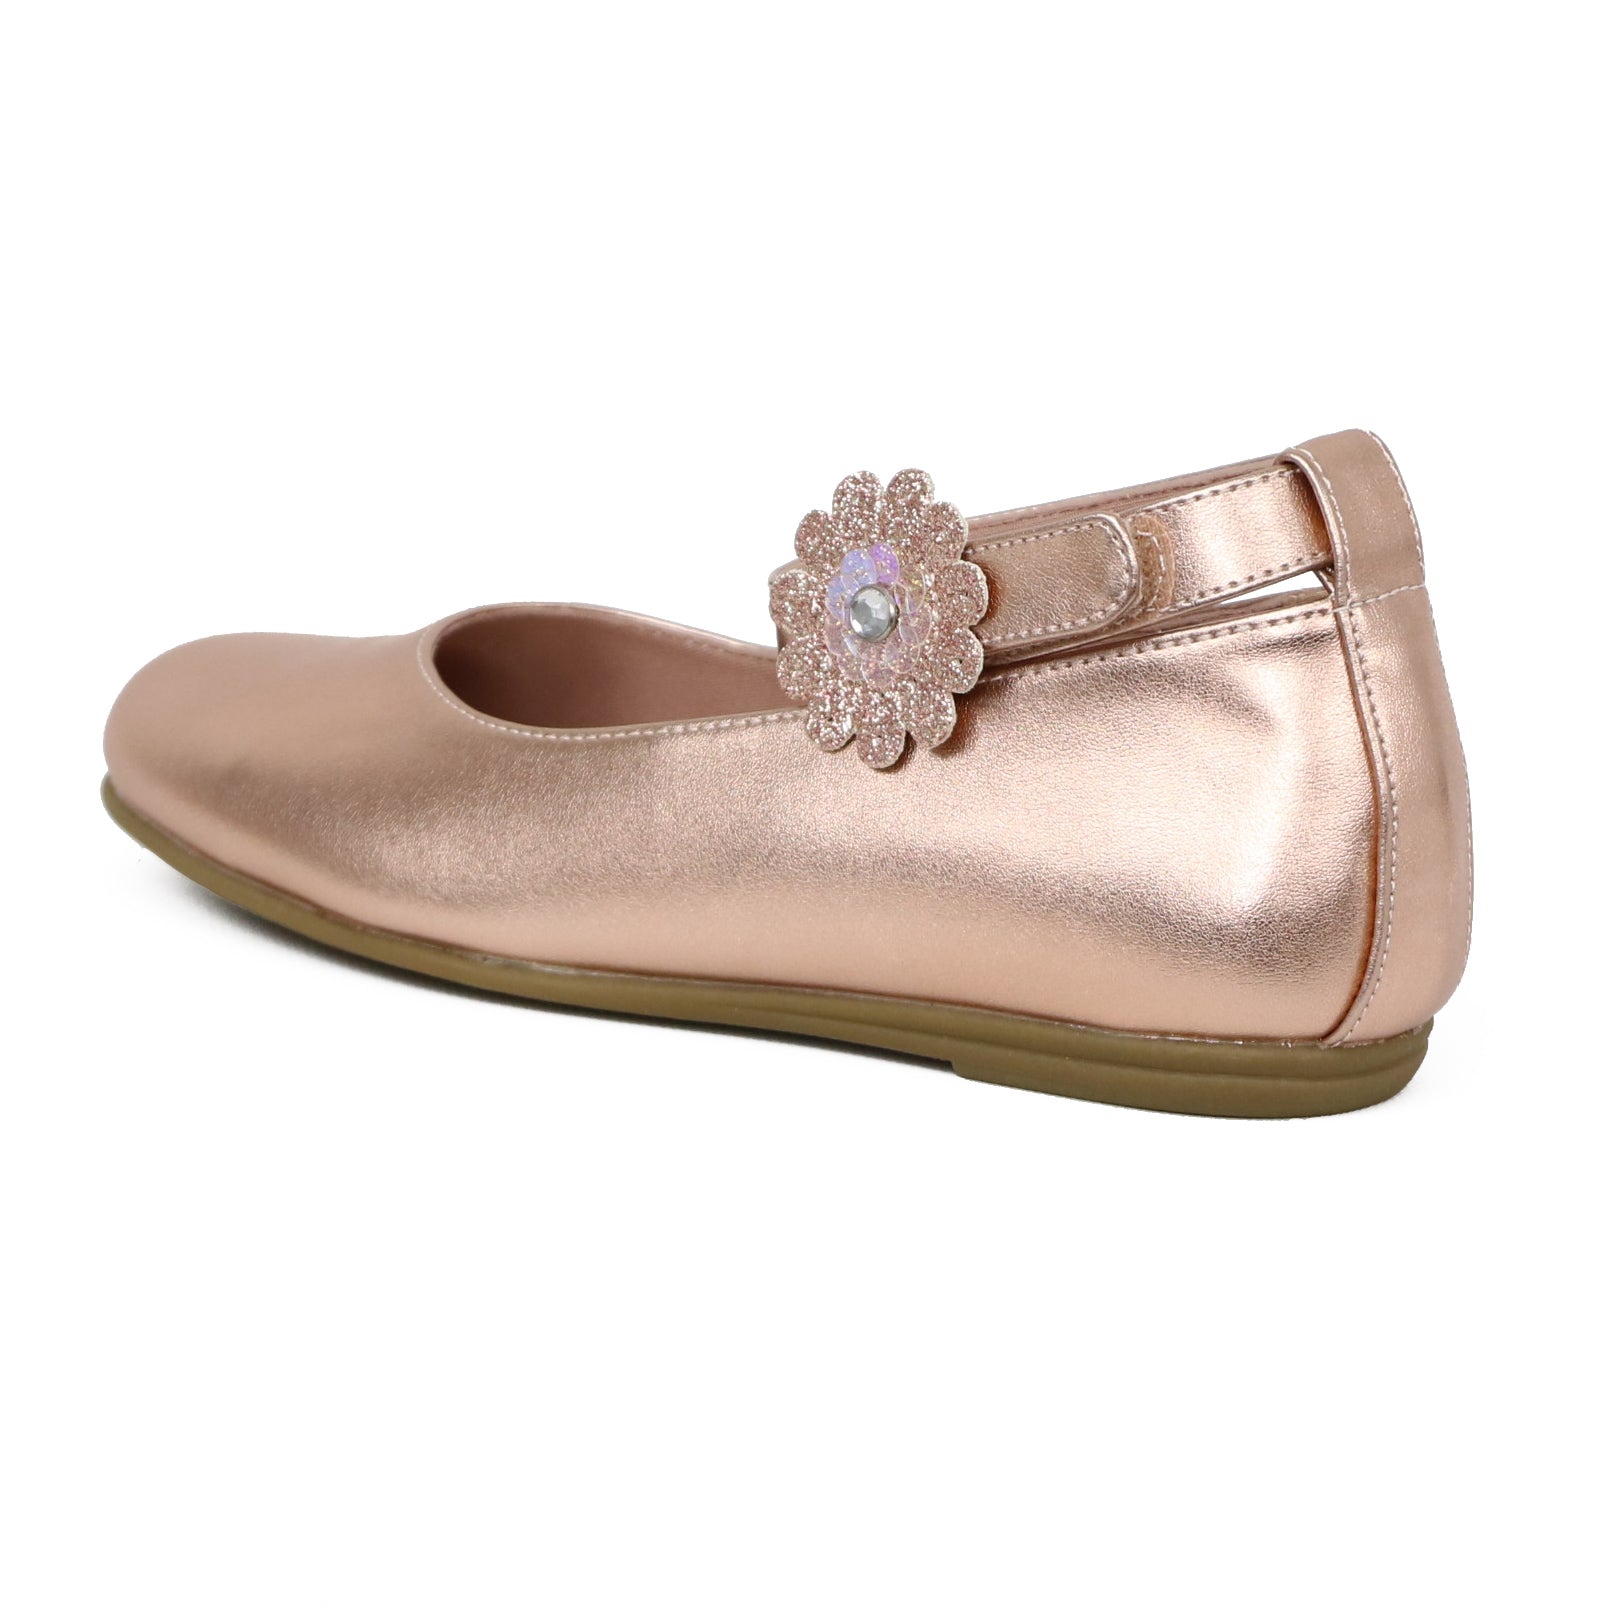 Rachel Shoes Toddler Girls 6-11 Ankle Strap Flower Ballerina Flats